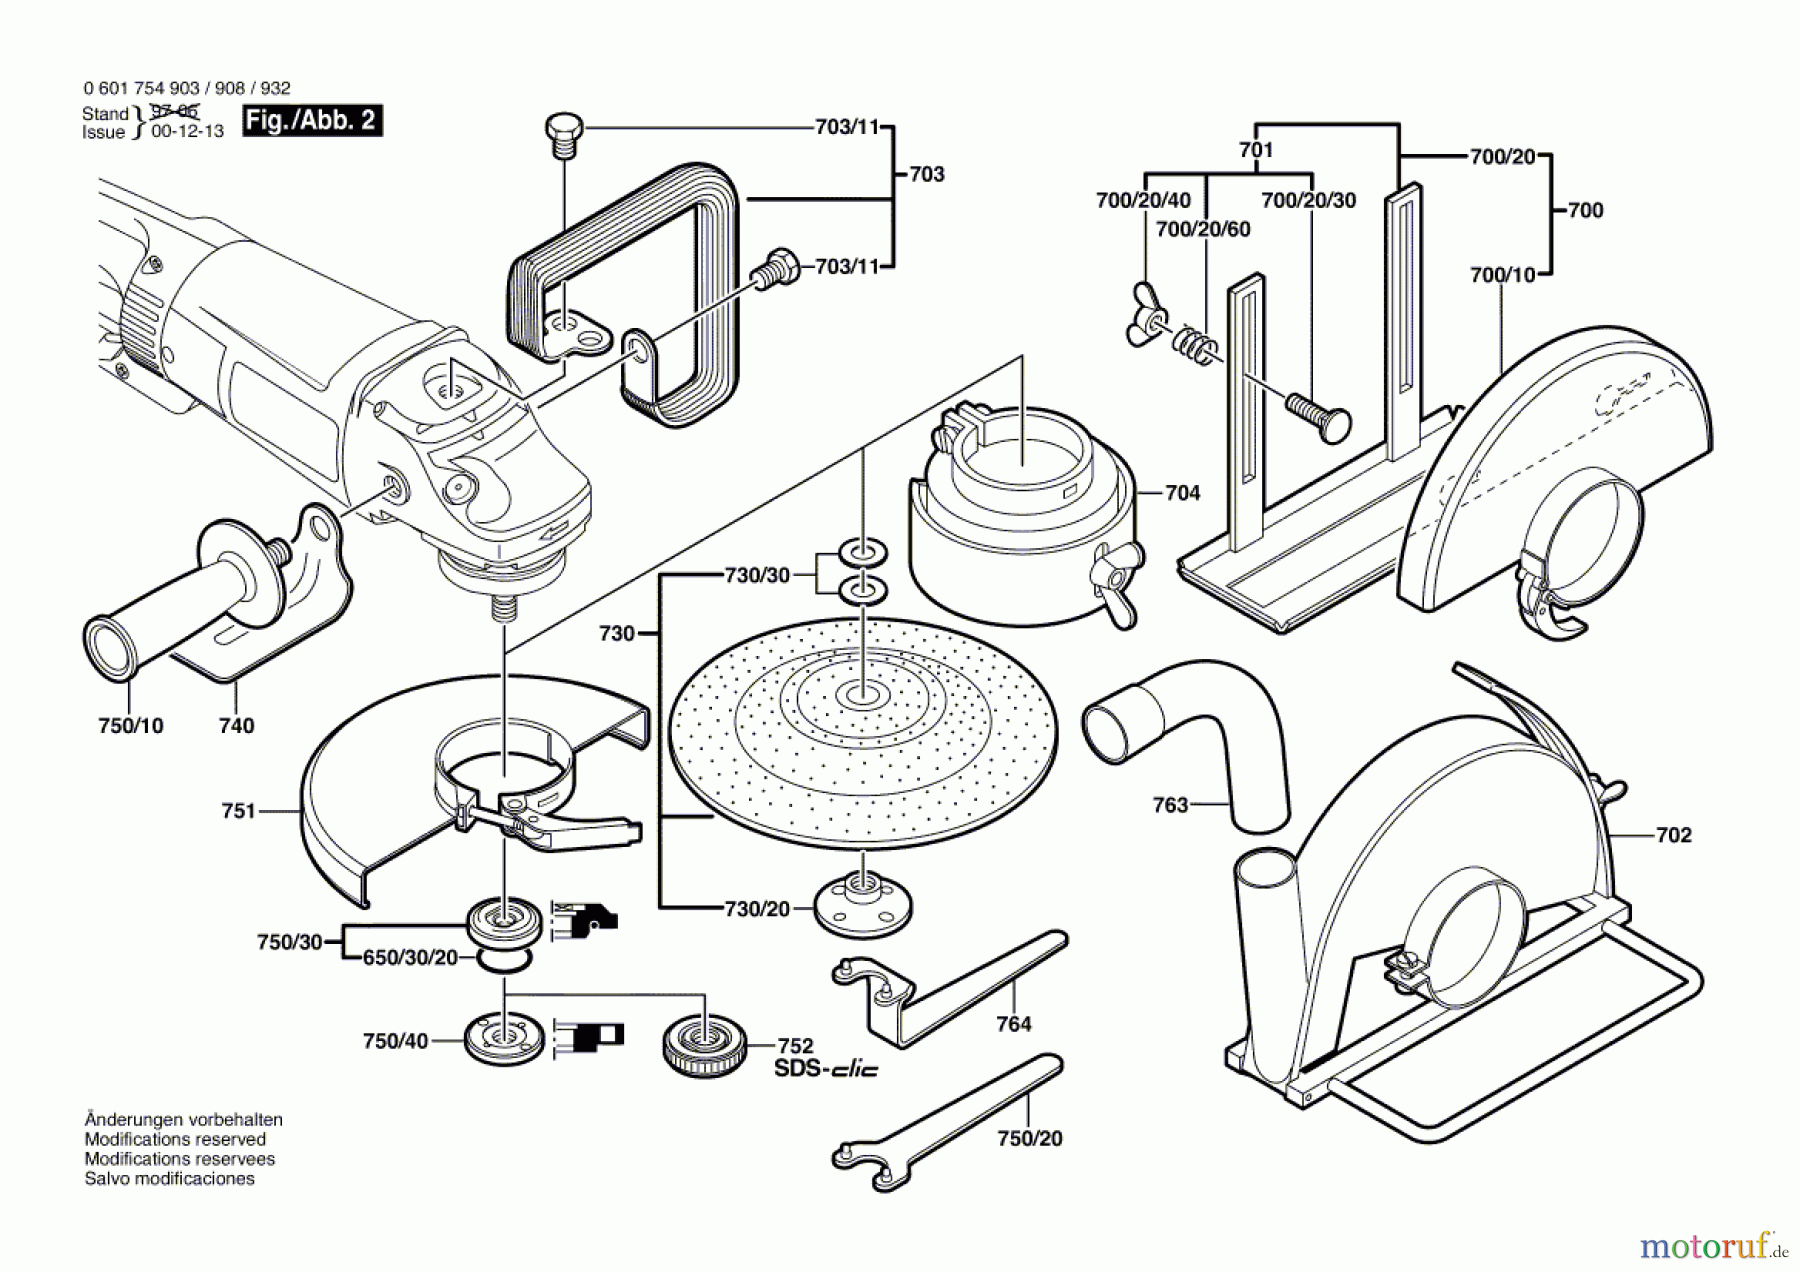  Bosch Werkzeug Winkelschleifer GWS 2300-23 J Seite 2